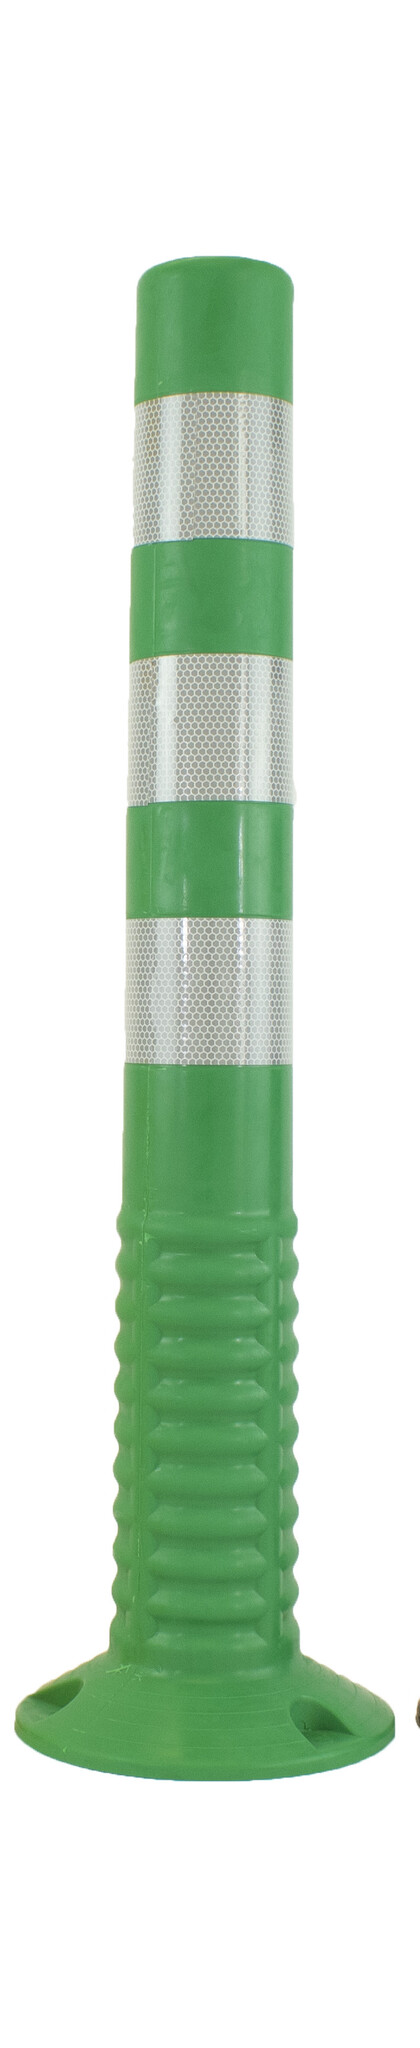 Balise autorelevable T-FLEX vert 75 cm